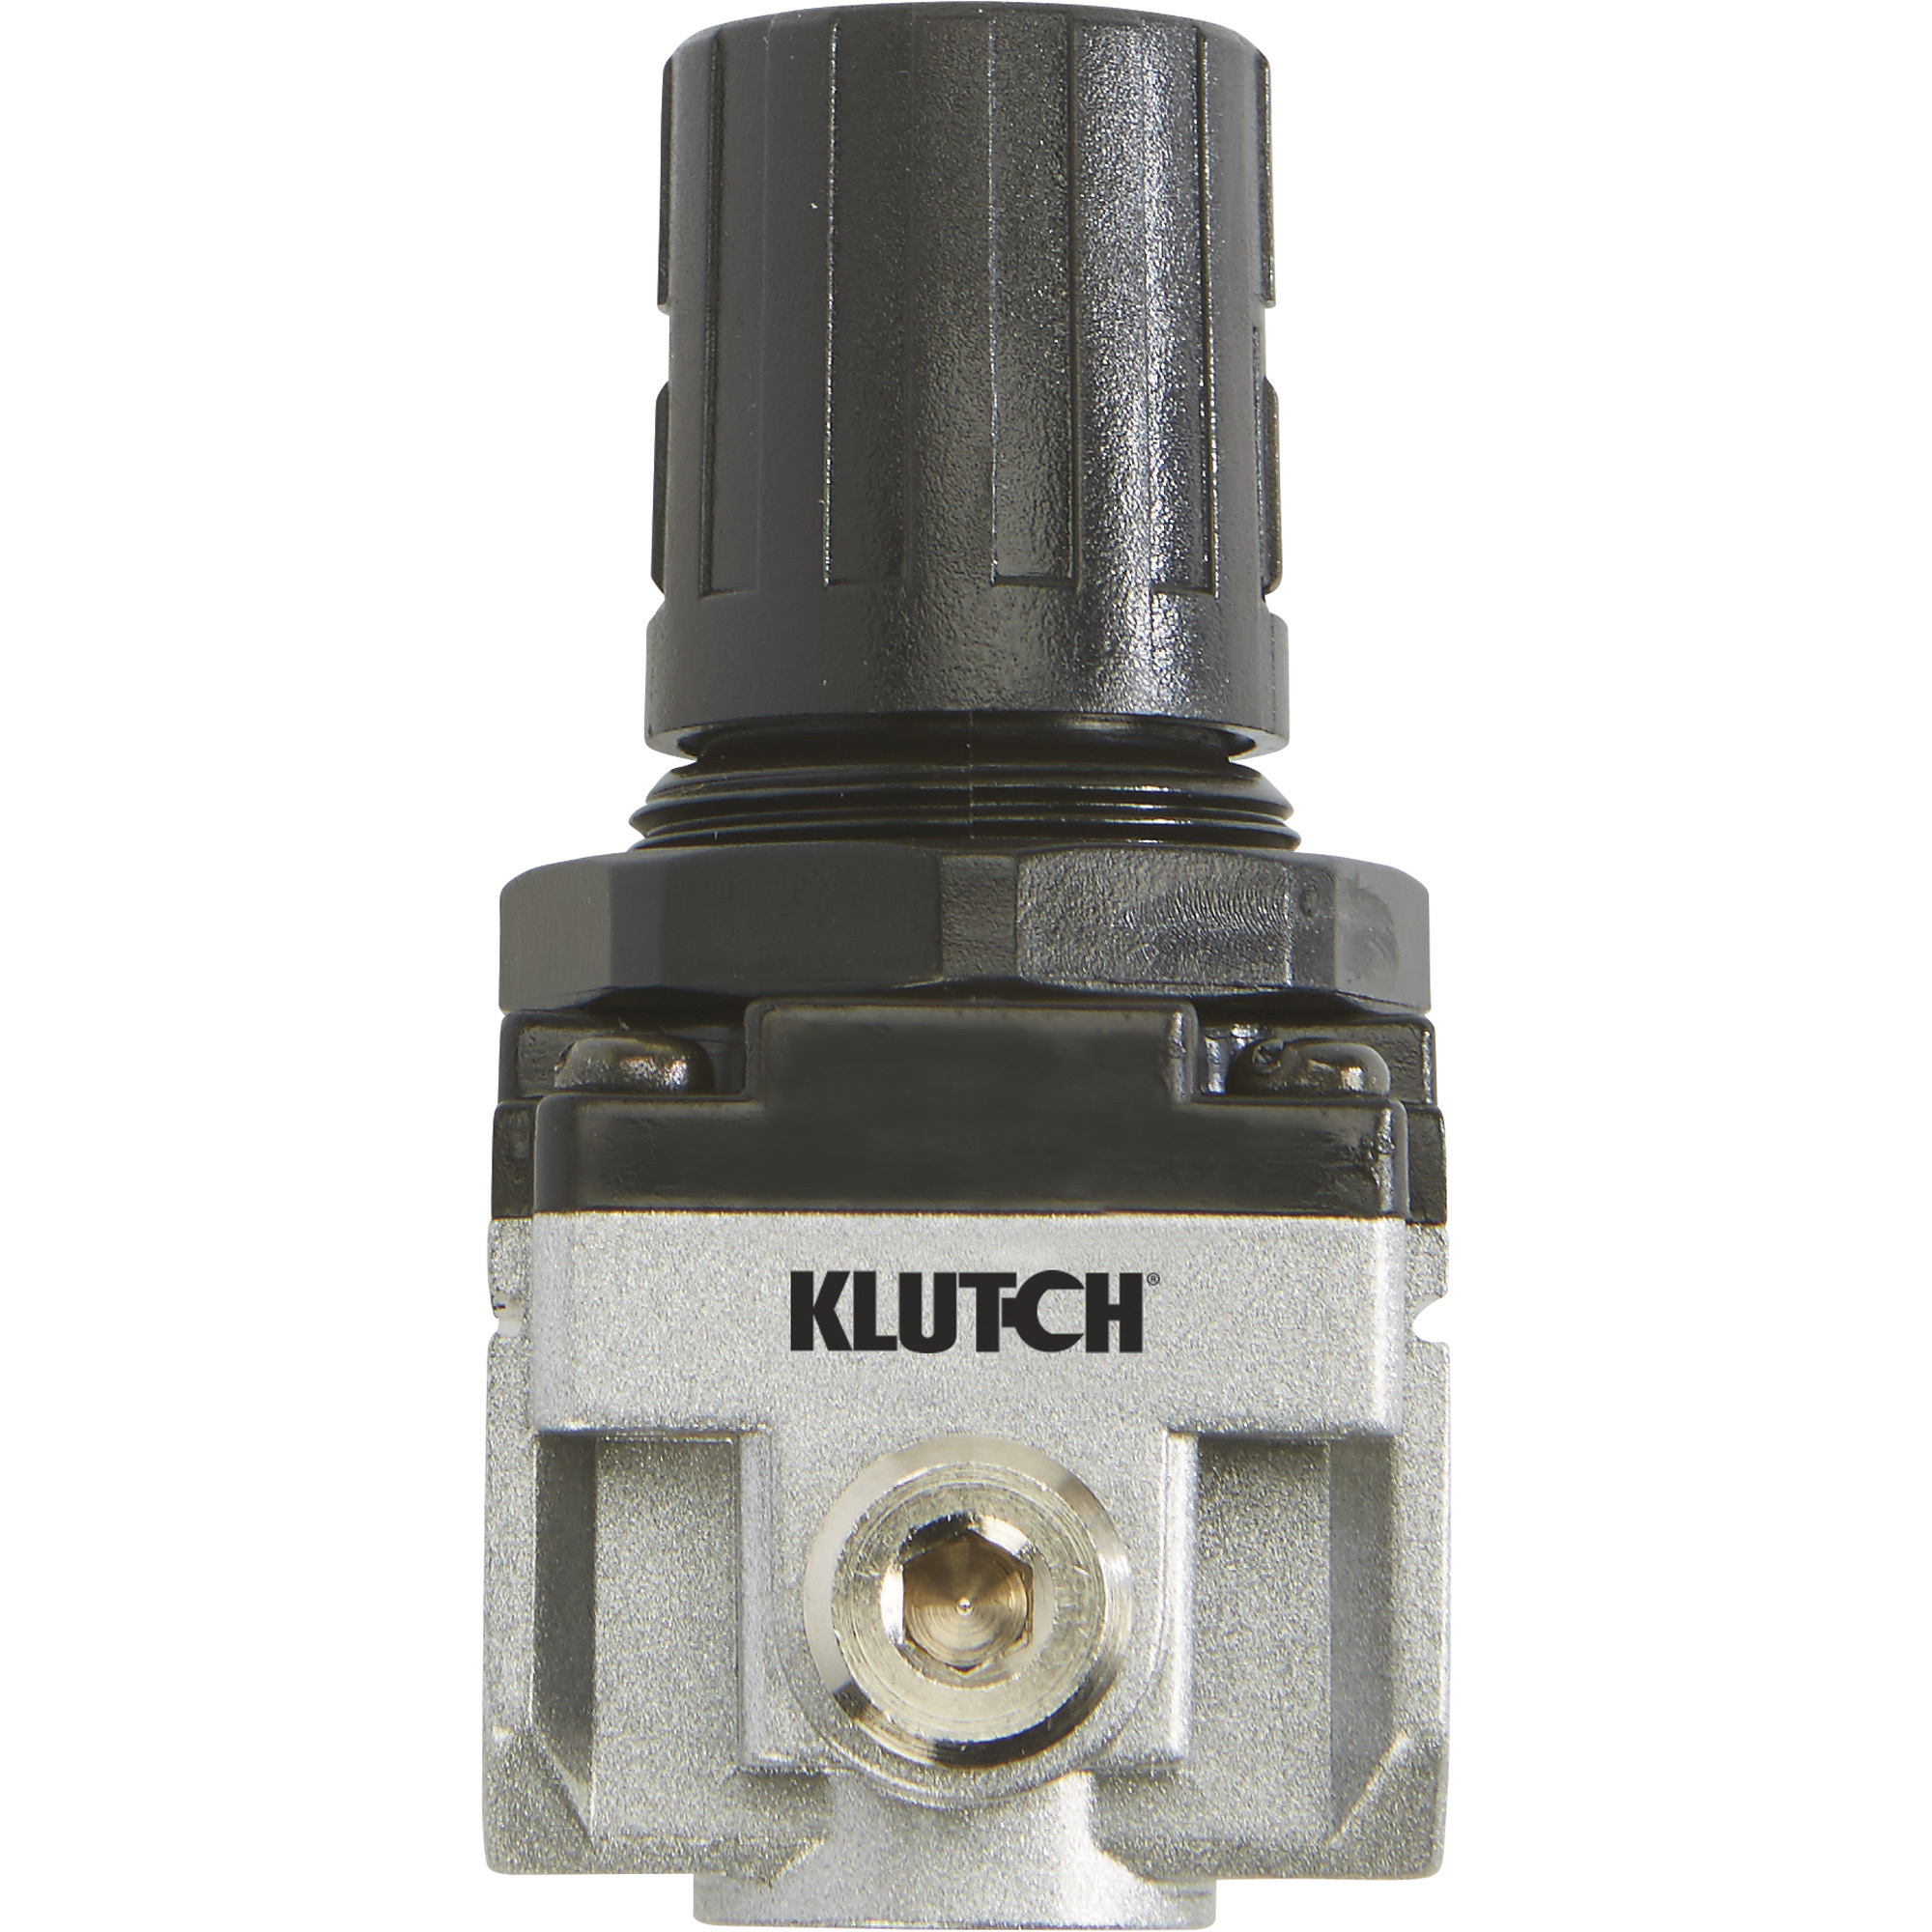 Klutch Mini Air Compressor Regulator, 1/4Inch, 220 Max. PSI, 21 CFM